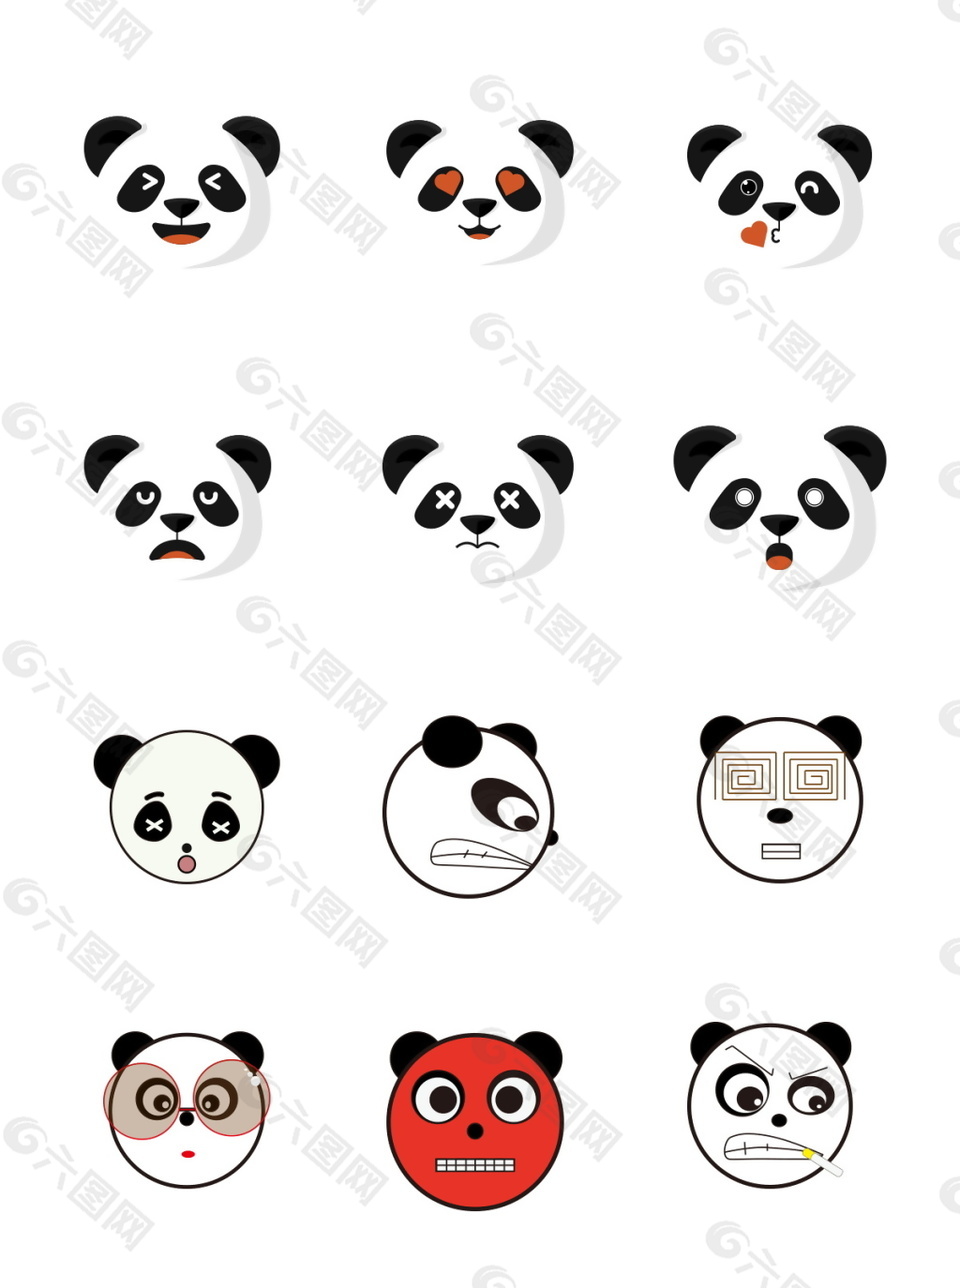 卡通熊猫图案装饰表情包集合设计模板